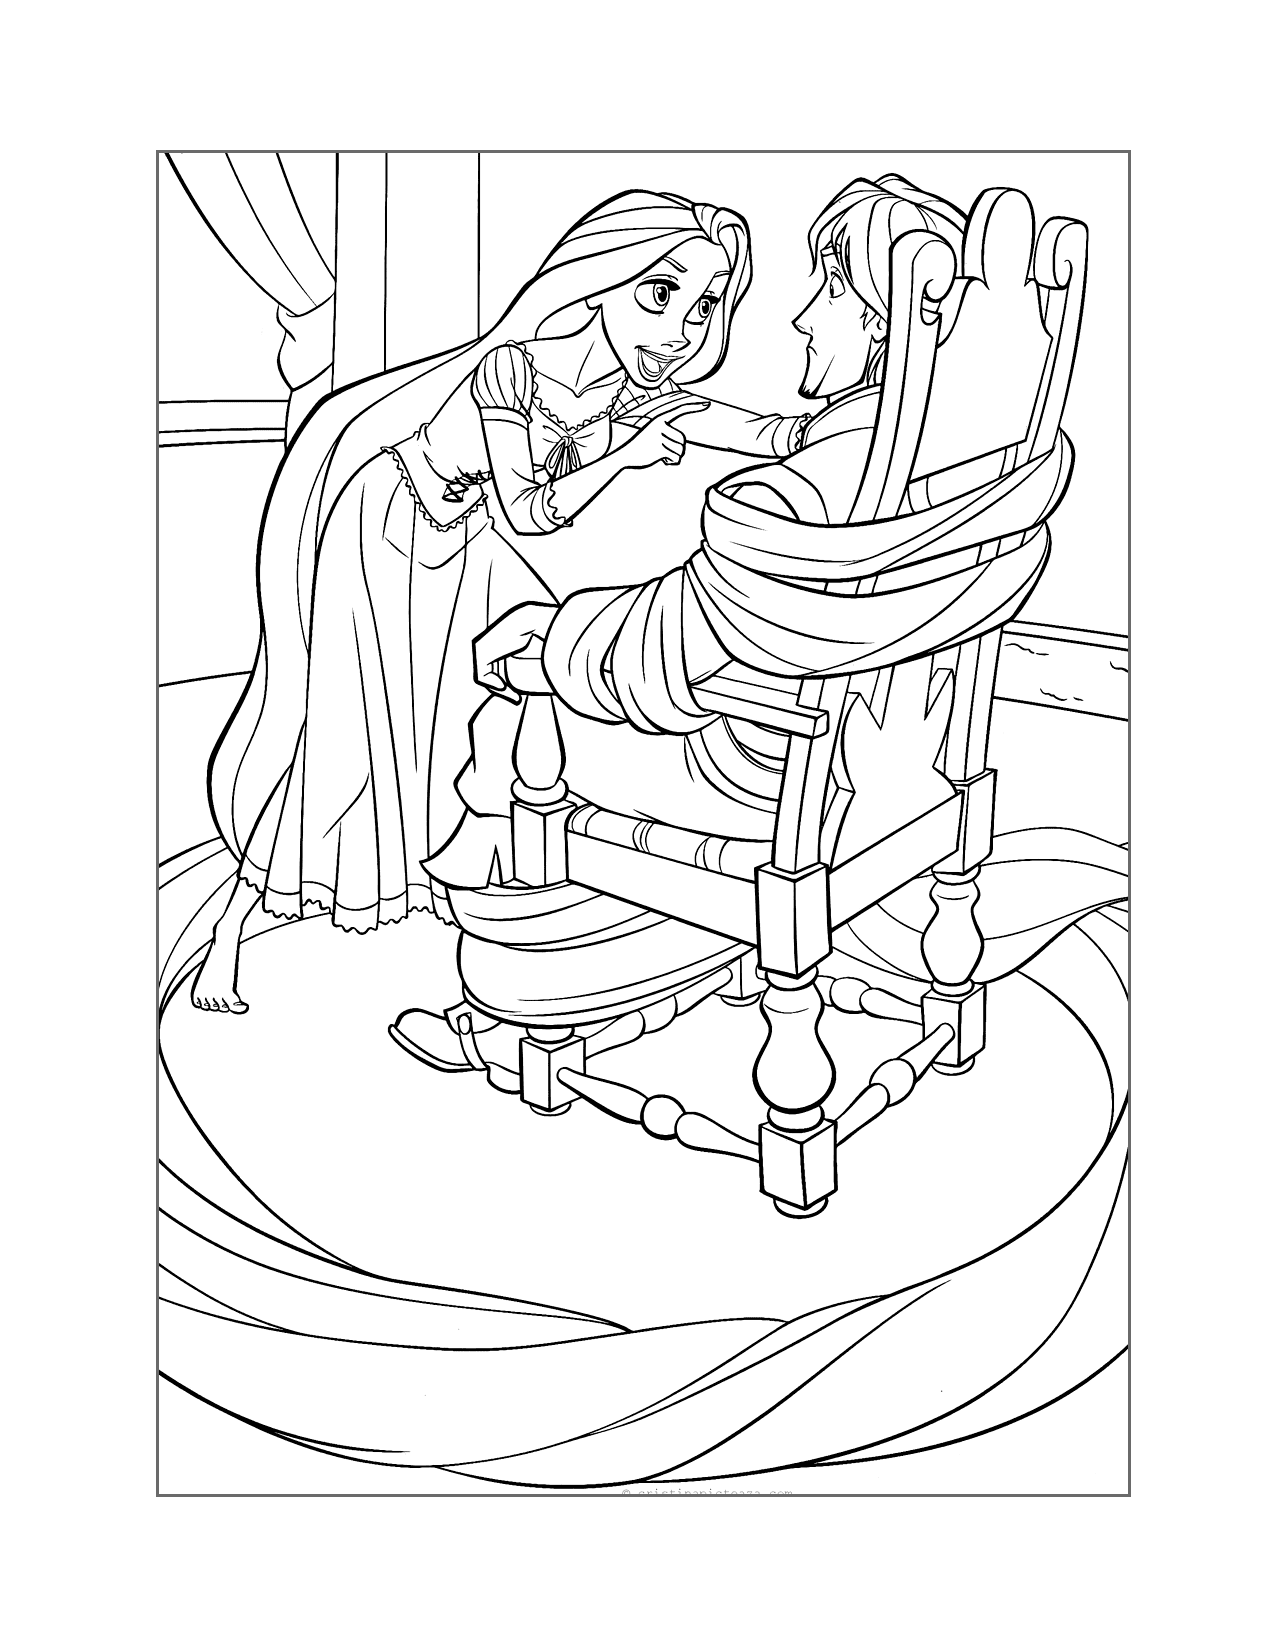 Rapunzel Captures Flynn Coloring Page